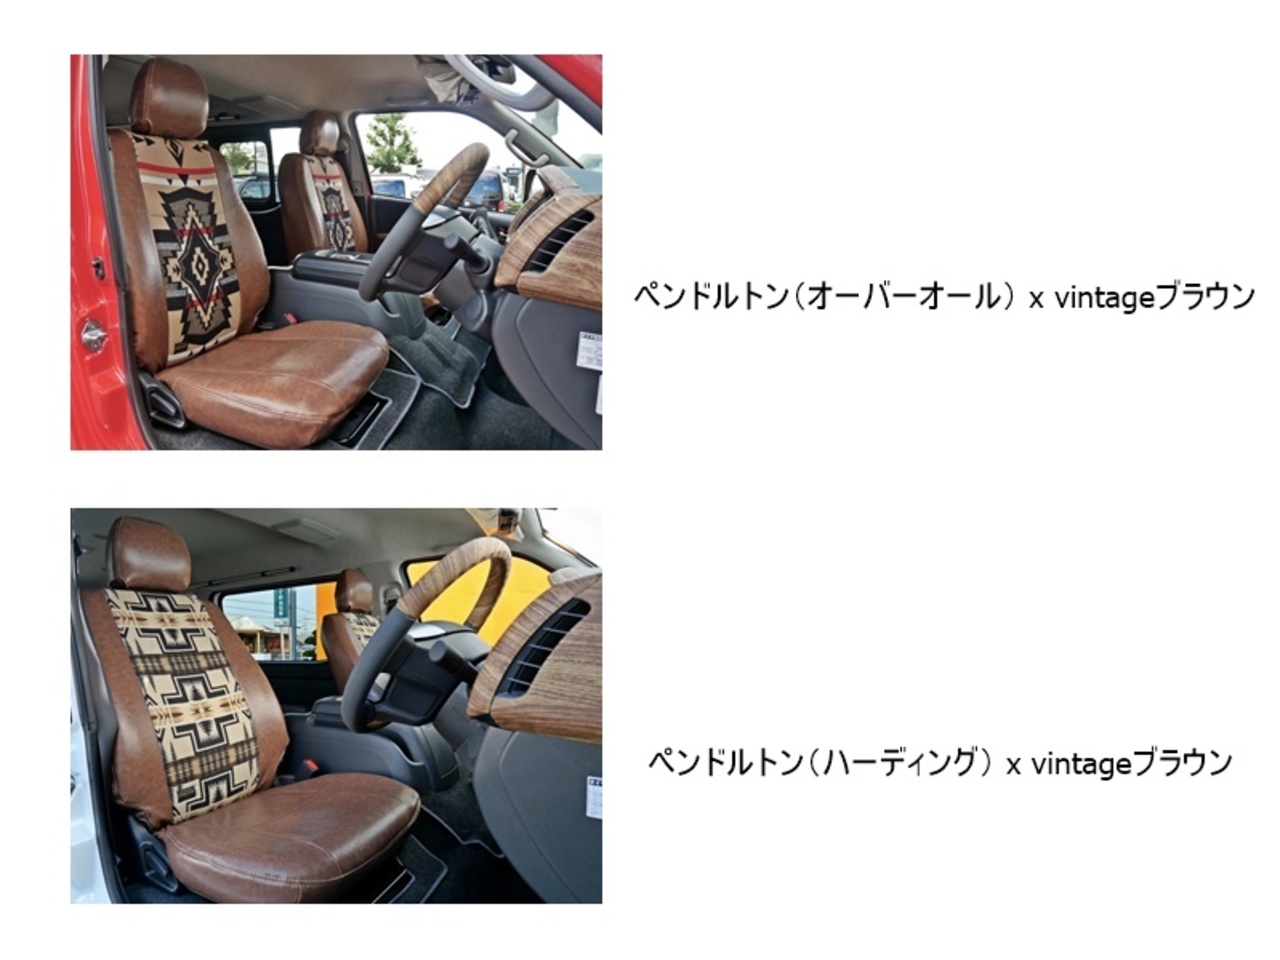 ハイエース 車中泊仕様 3列シート×2段ベッド【FD-BOX W06】 ヴィンテージ生地オプション+￥33,000でペンドルトン選べます